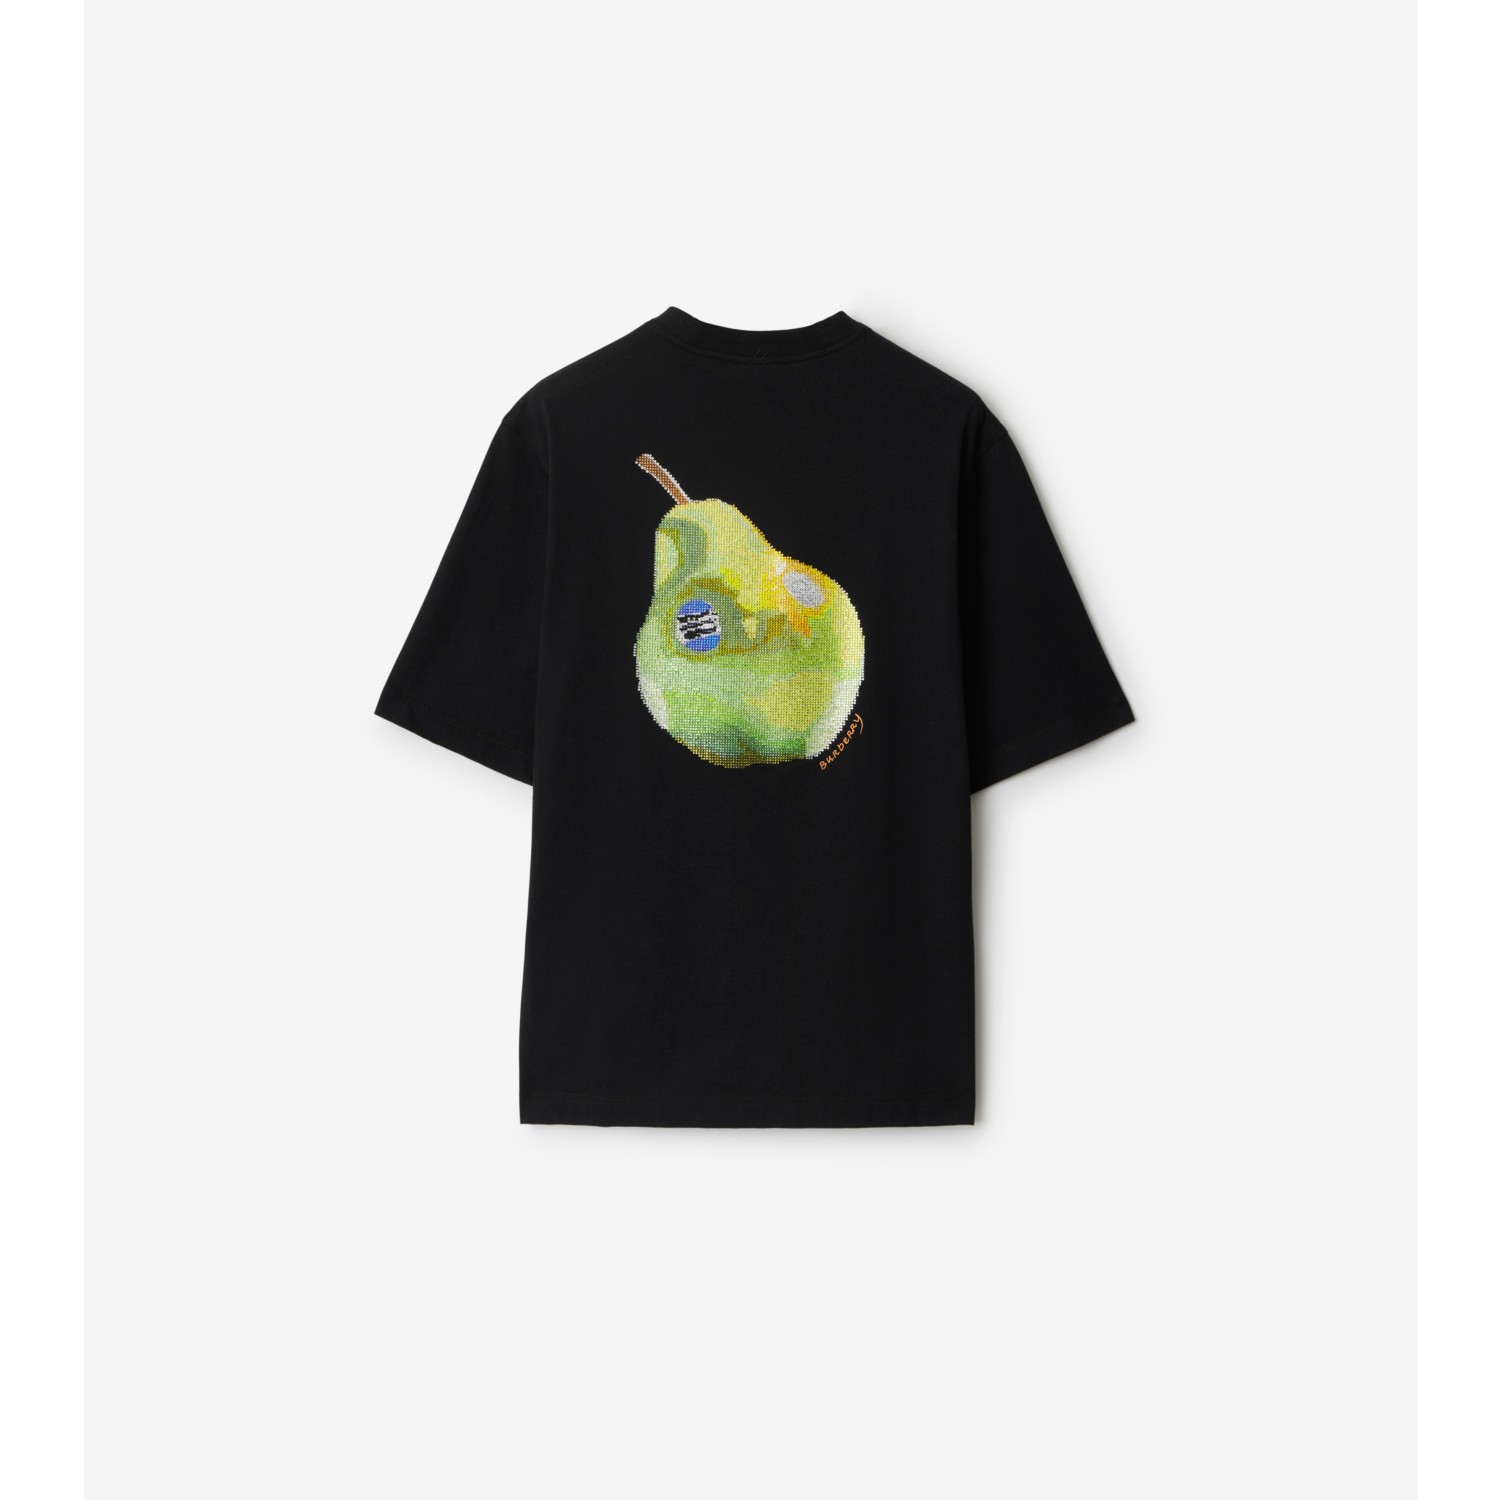 T-shirt in cotone con pera in cristalli